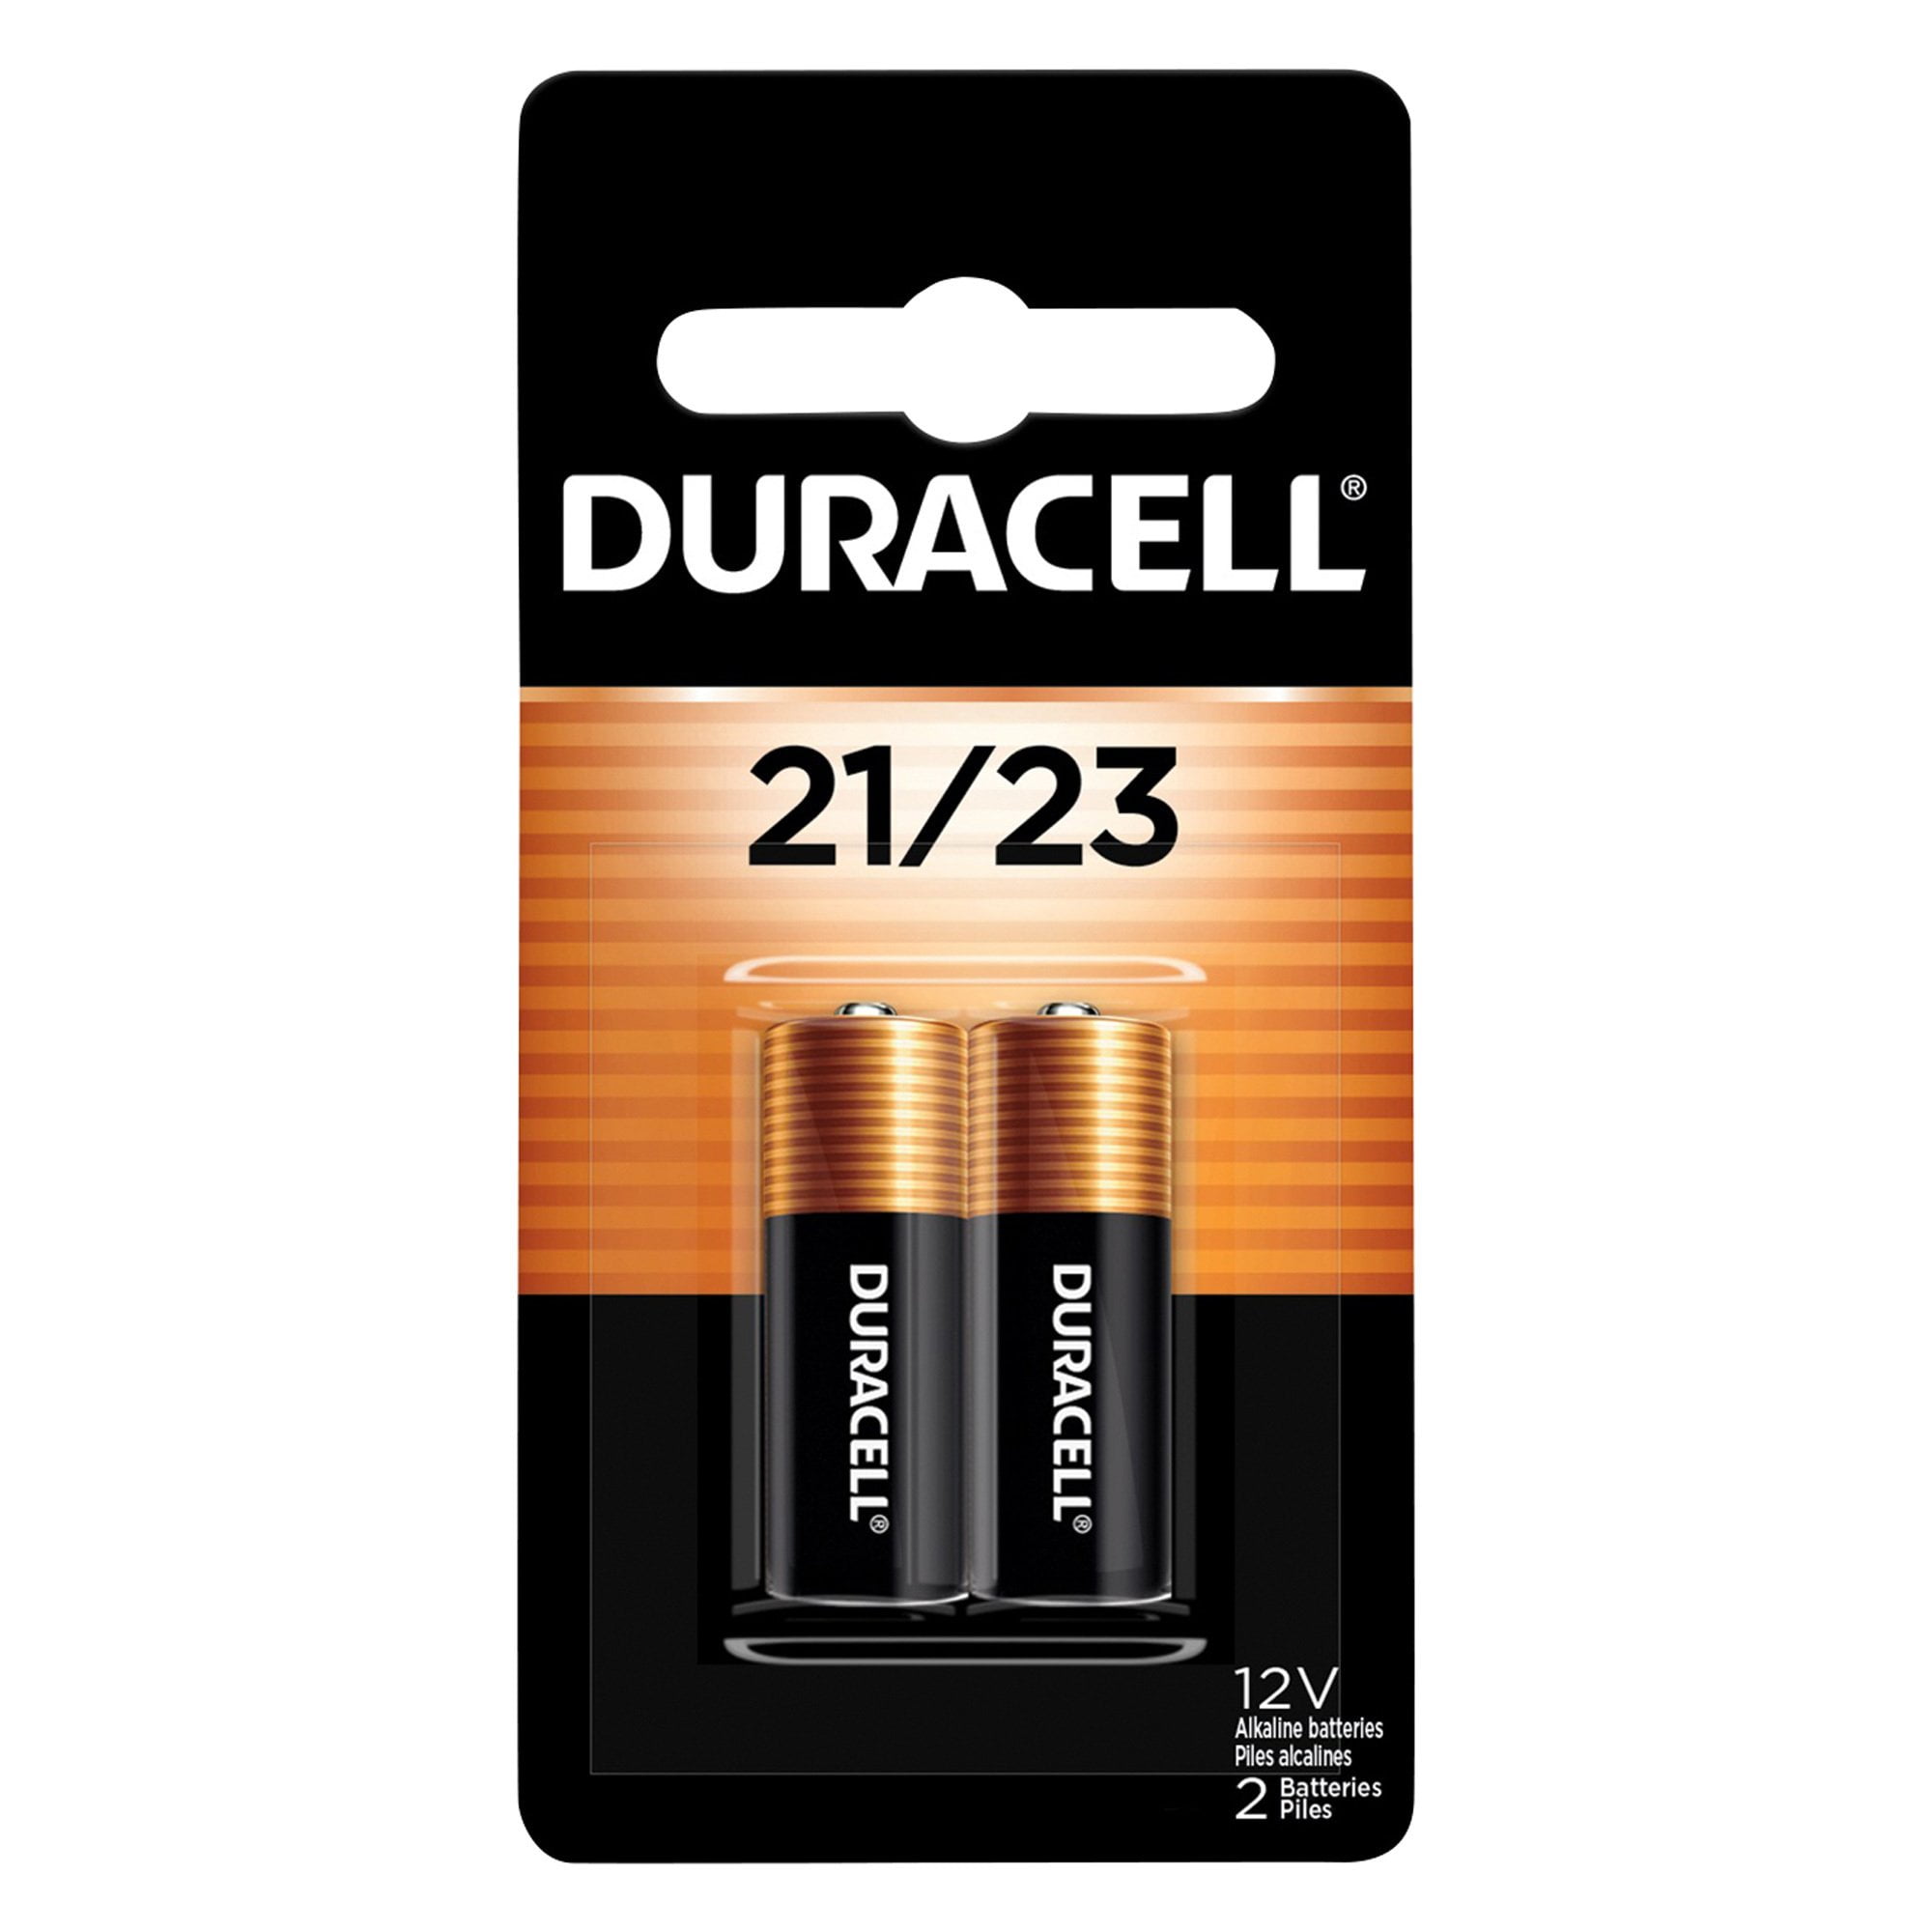 Duracell MN21/23 Alkaline Batteries - 12V, 2-Pk. 